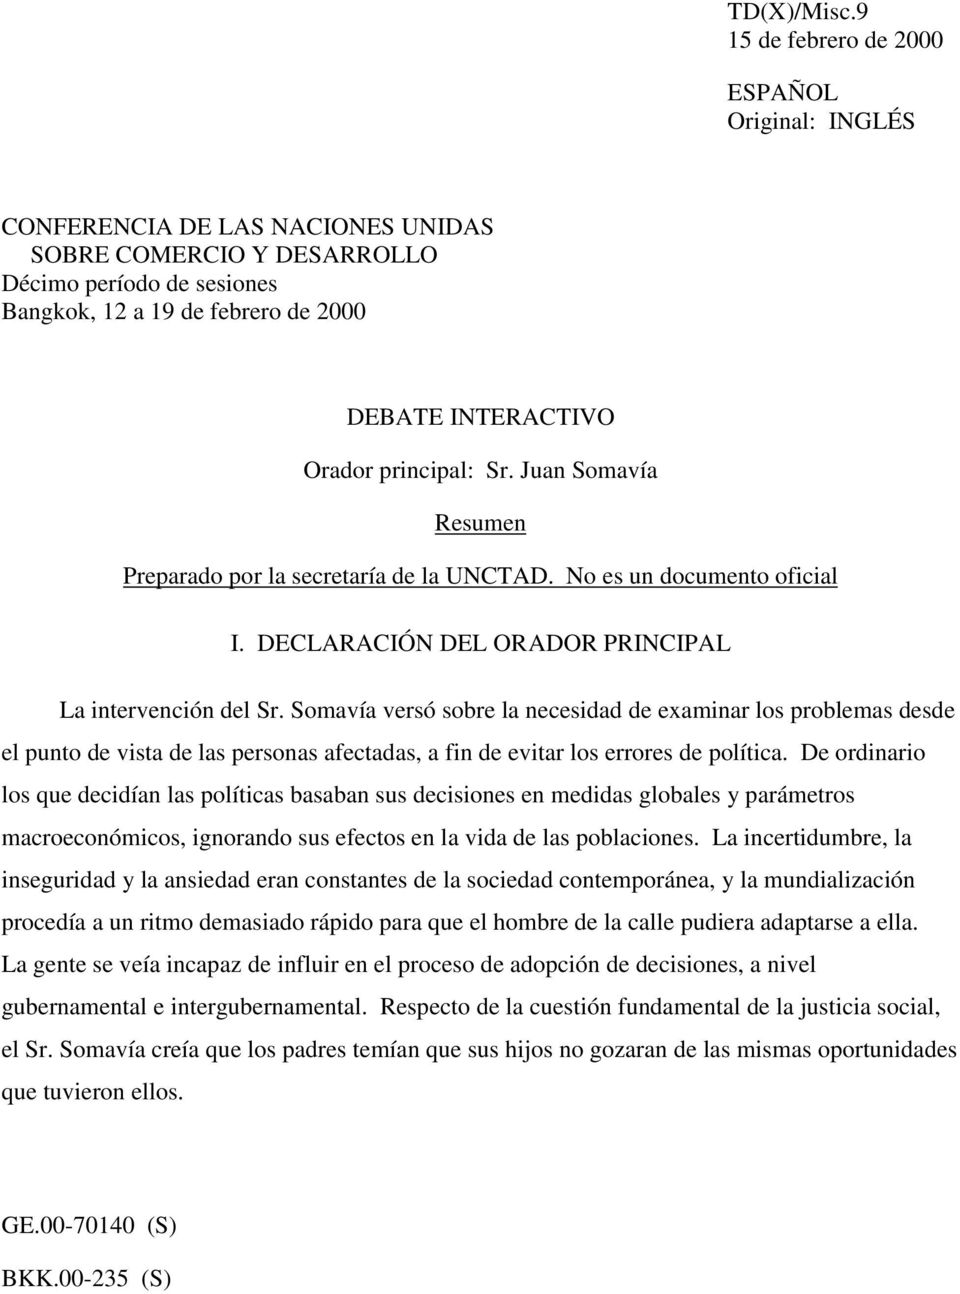 Orador principal: Sr. Juan Somavía Resumen Preparado por la secretaría de la UNCTAD. No es un documento oficial I. DECLARACIÓN DEL ORADOR PRINCIPAL La intervención del Sr.